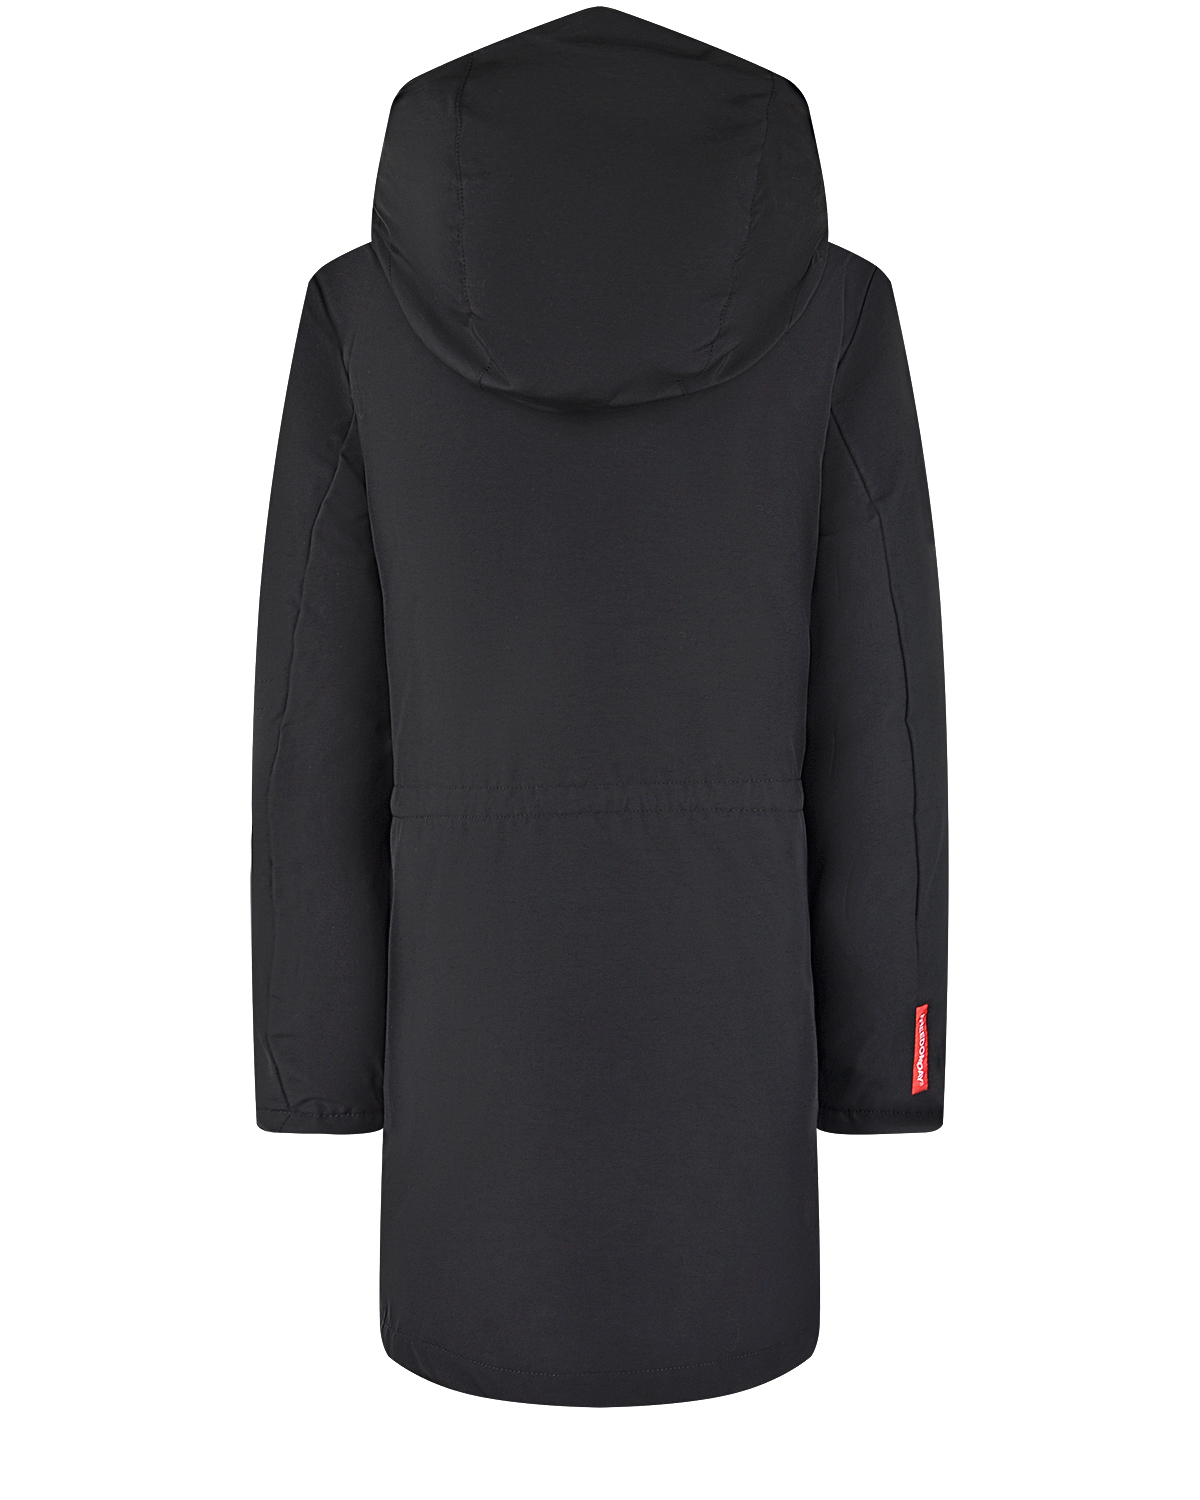 Пуховое пальто черного цвета Freedomday детское, размер 128 - фото 3